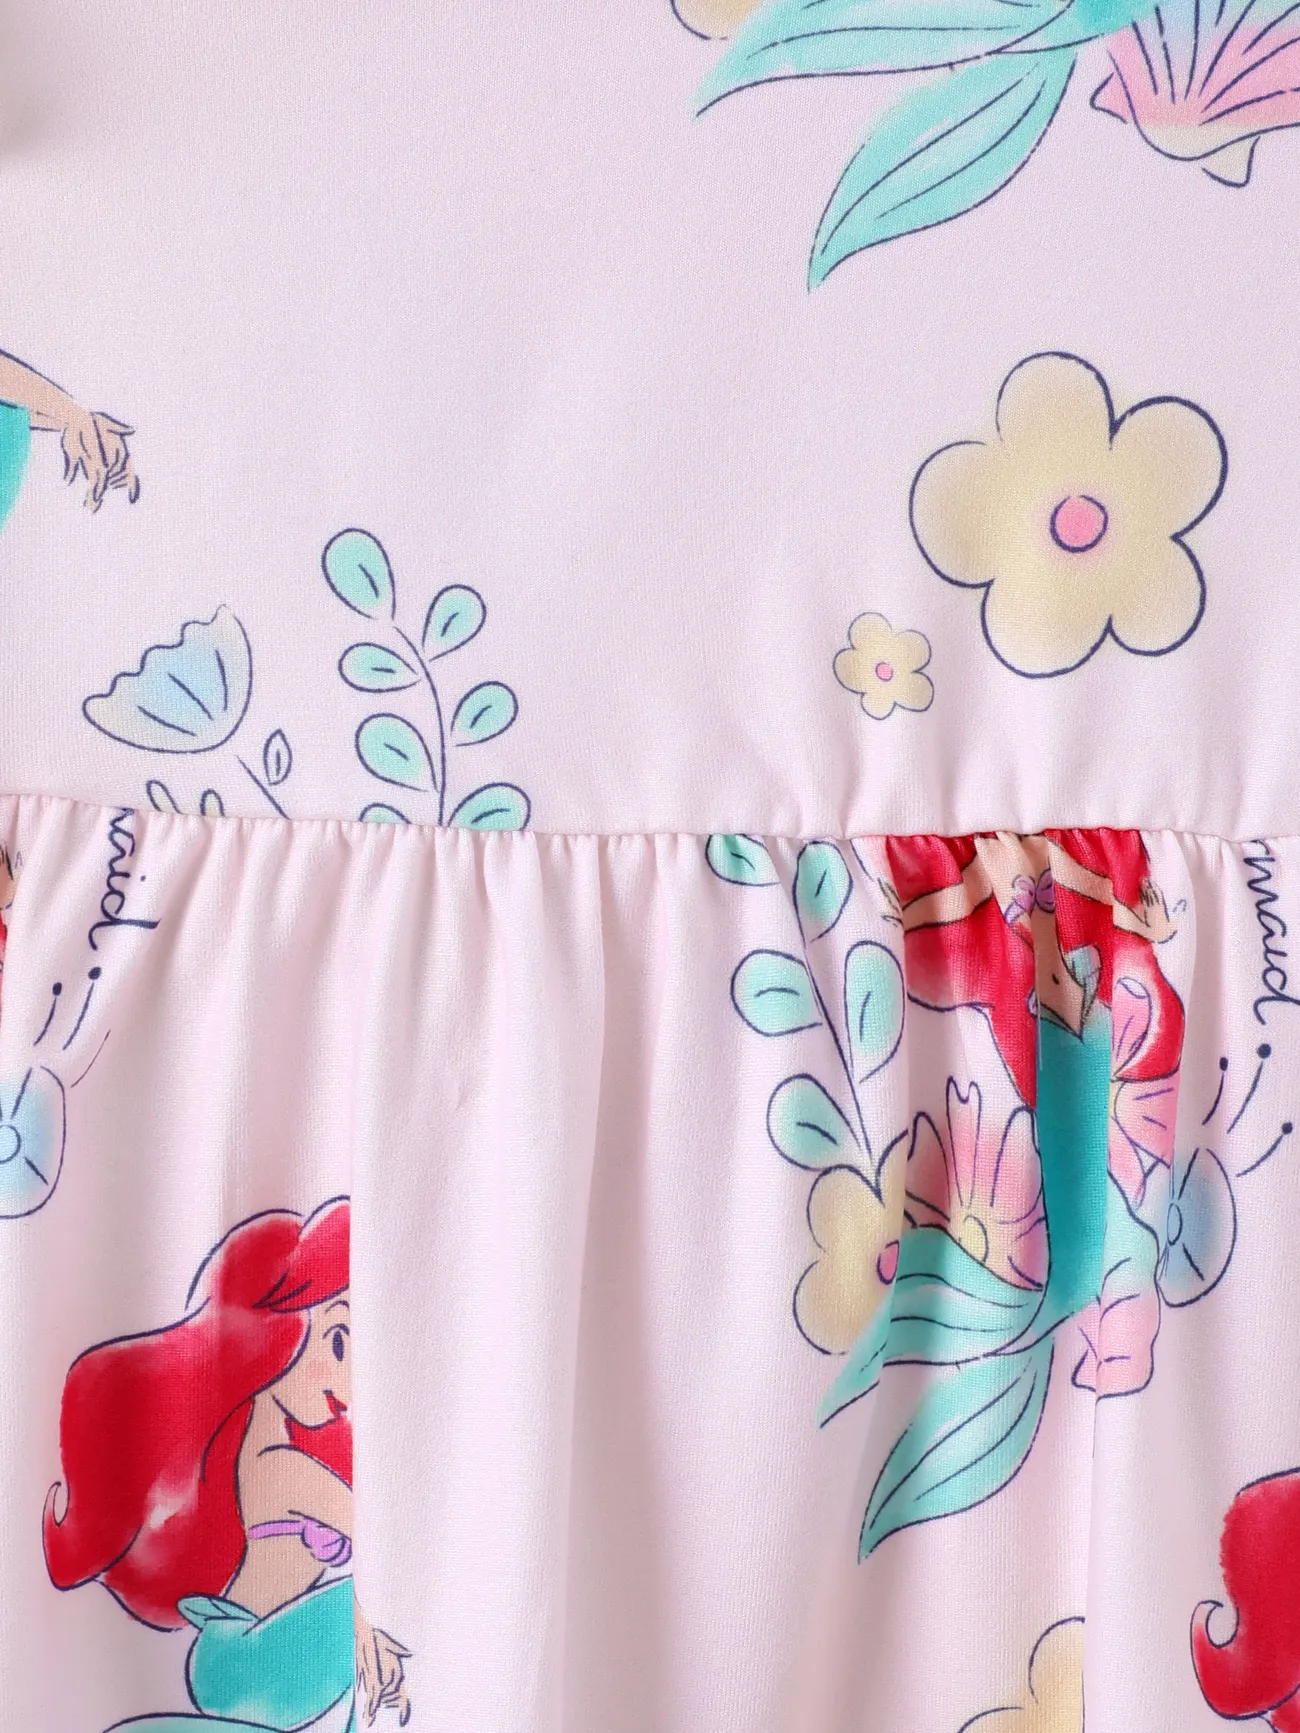 Disney Princess Baby Girl Floral & Character Print Ruffled Long-sleeve Dress  Pink big image 1